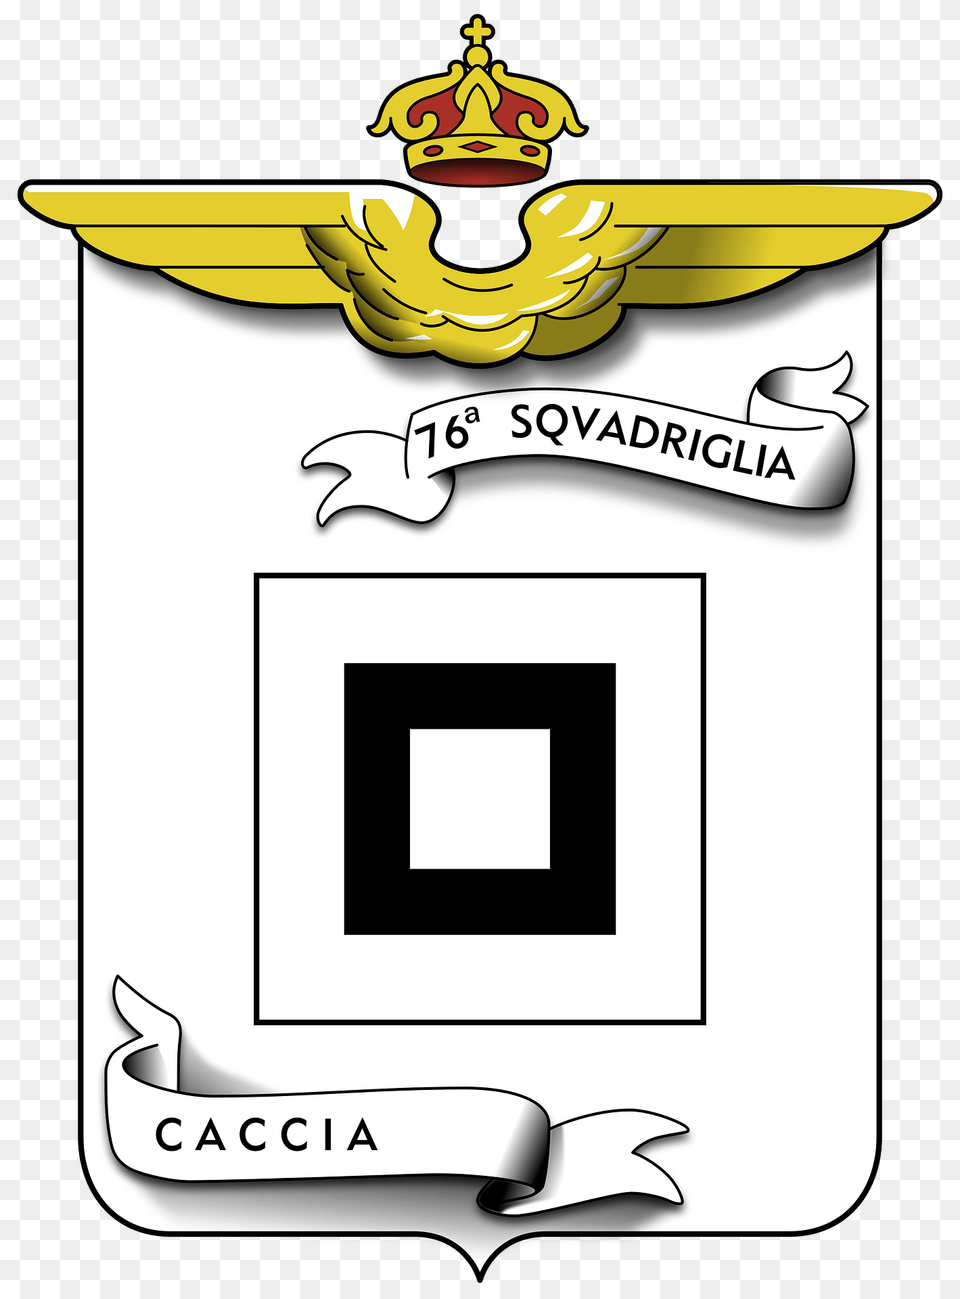 Coa 76 Squadriglia Caccia Clipart, Logo, Text, Emblem, Symbol Png Image